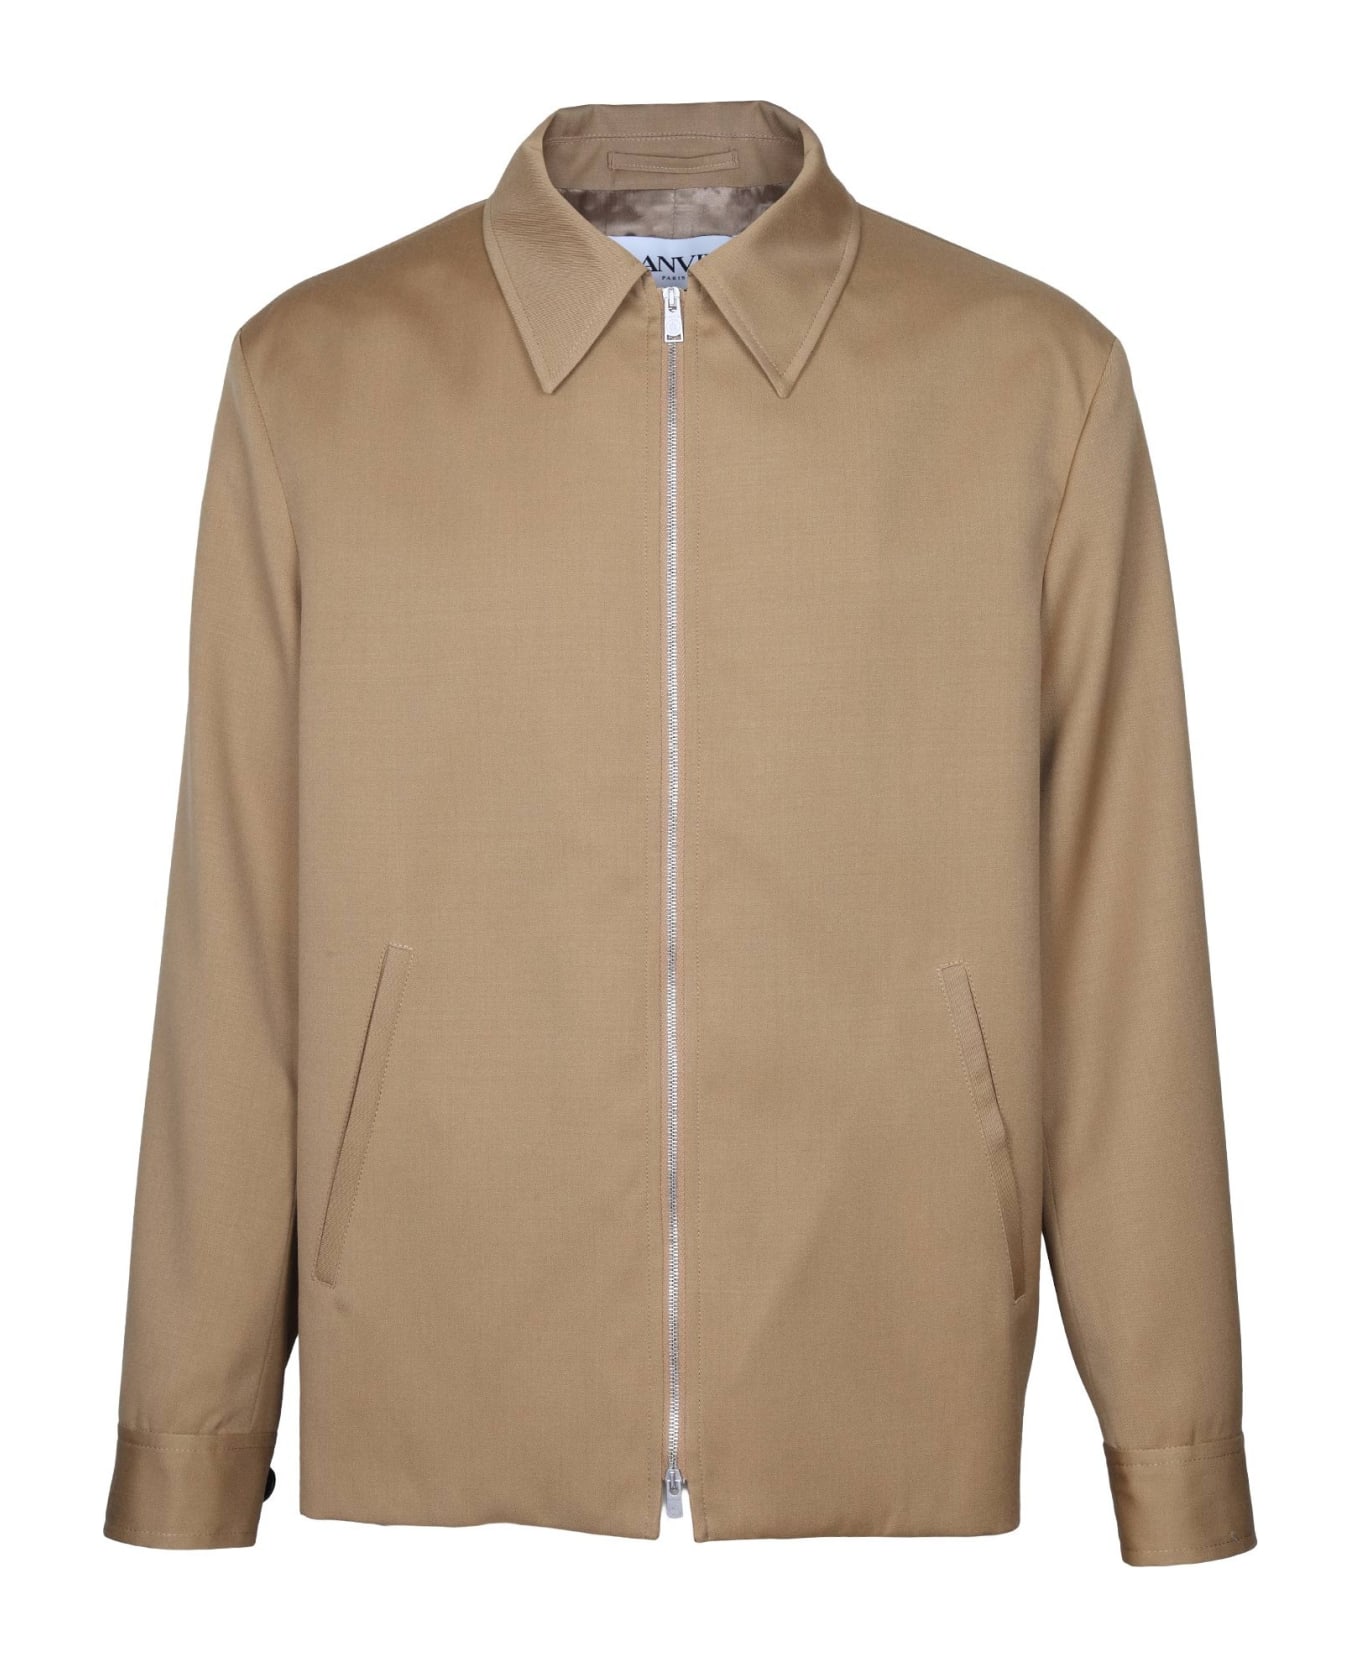 Lanvin Wool Jacket With Zip Desert Color - Desert